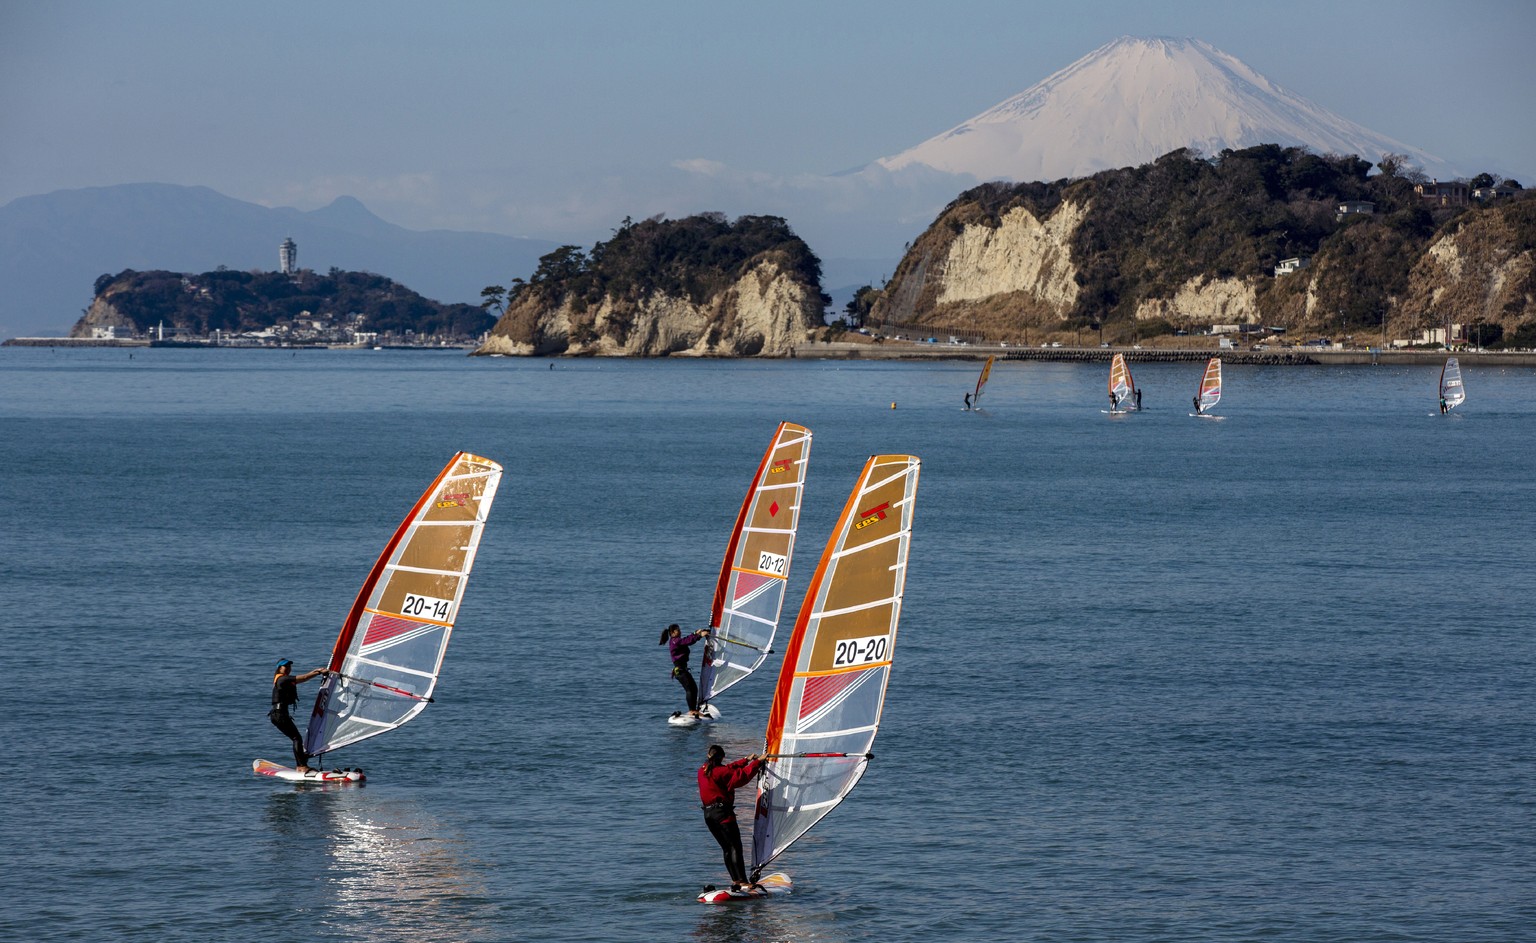 Segel- und Windsurf-Wettkämpfe finden in Enoshima statt – mit Blick auf den Mount Fuji.